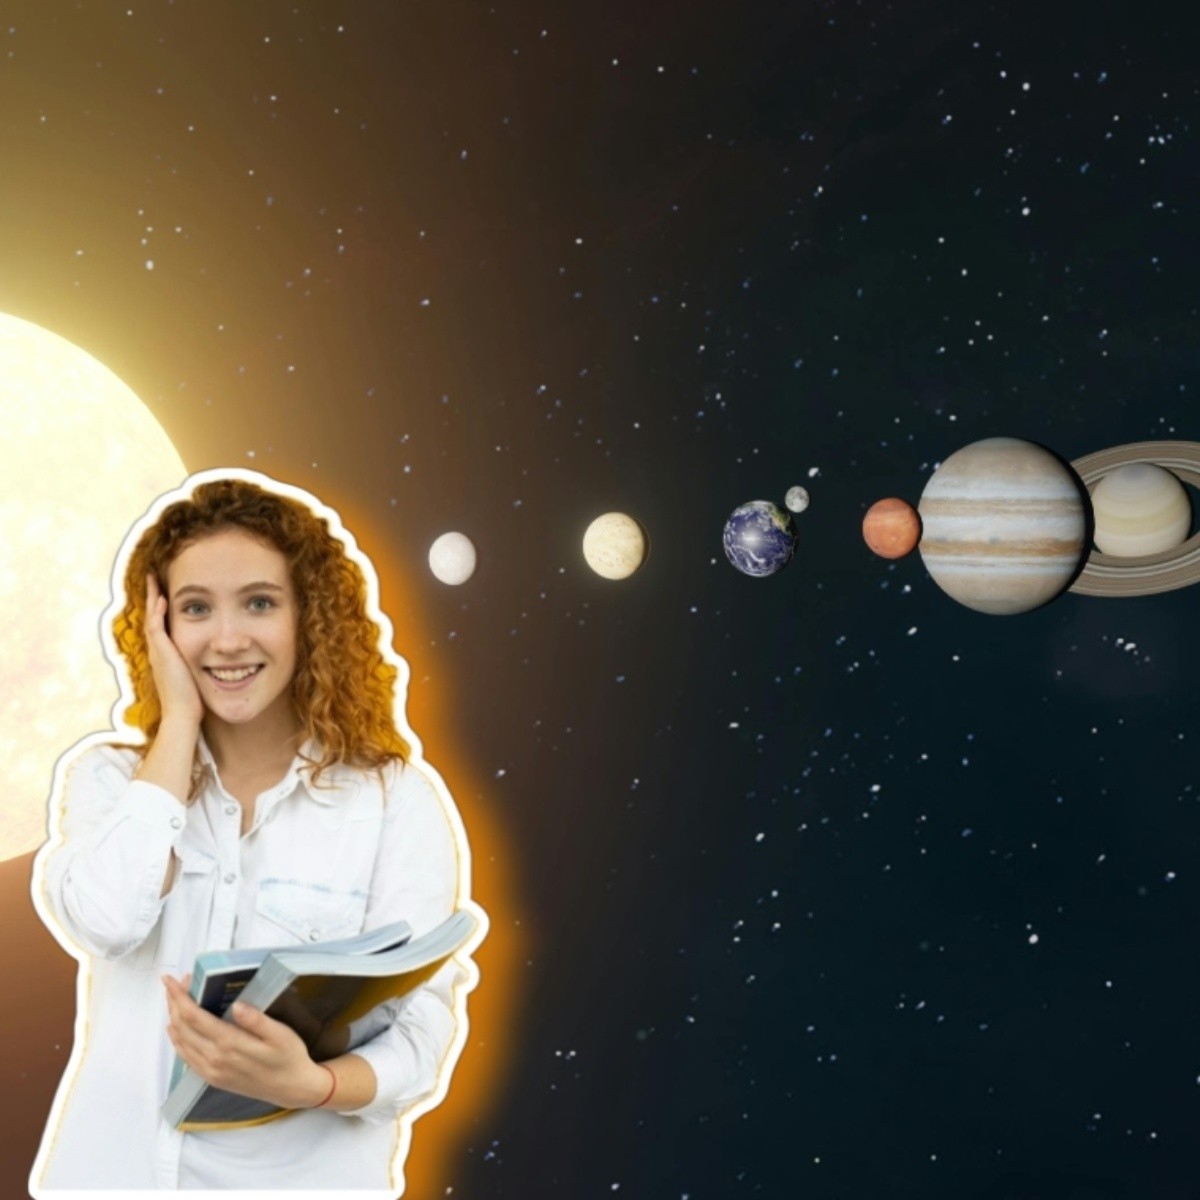 astronomía: cuántos planetas hay en el sistema solar, ¿aun se incluye a plutón?